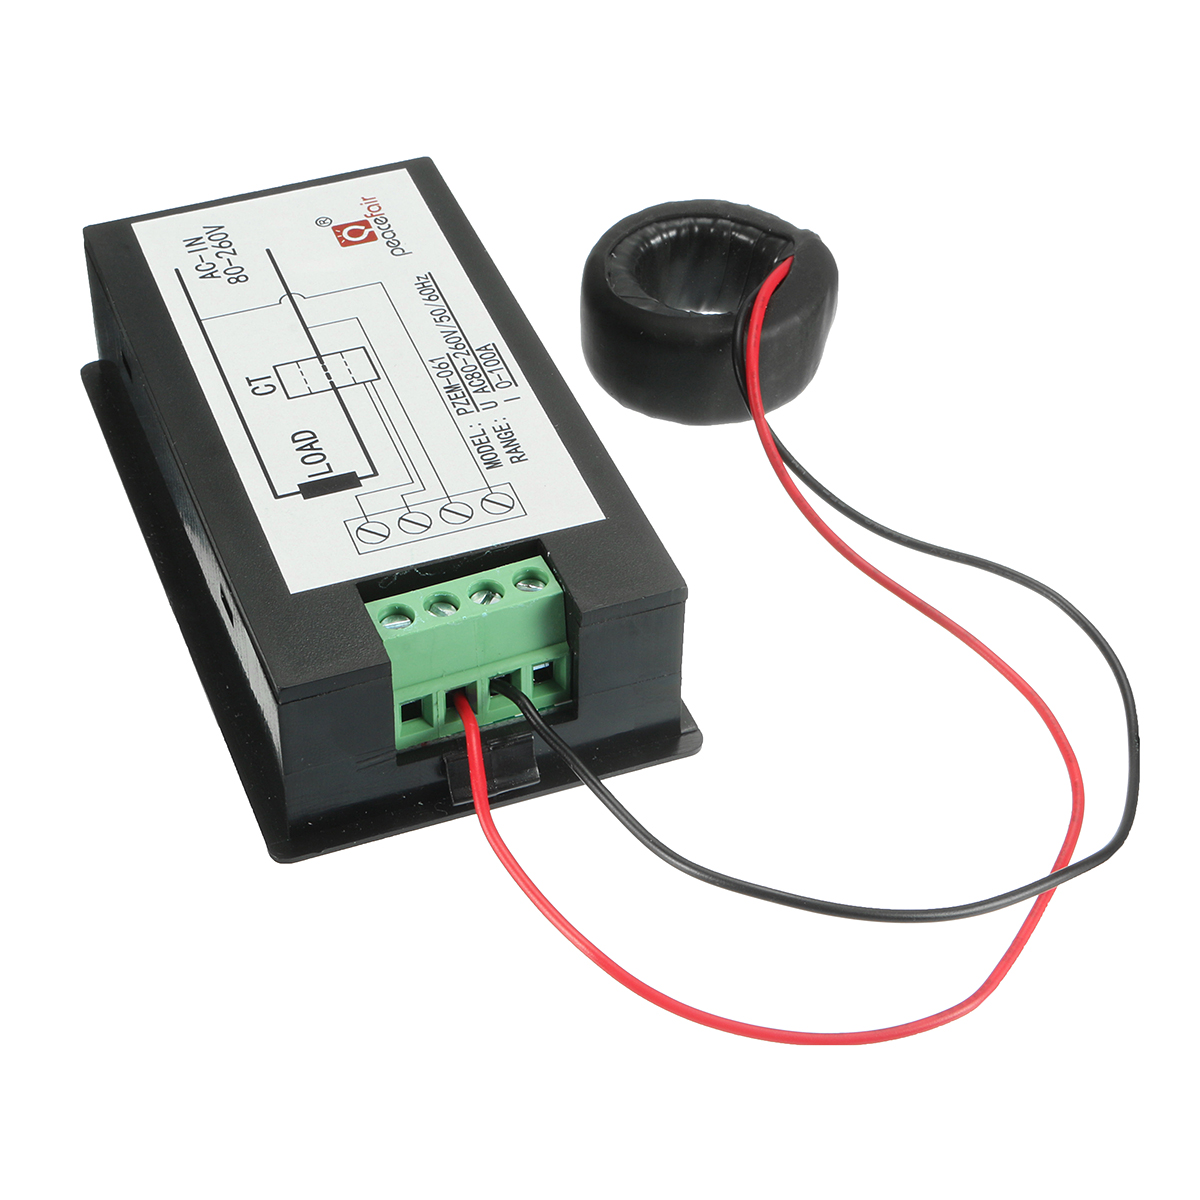 AC-80-260V-100A-Digital-Current-Voltage-Amperage-LCD-Power-Meter-DC-Volt-Amp-Testing-Gauge-Monitor-P-1328295